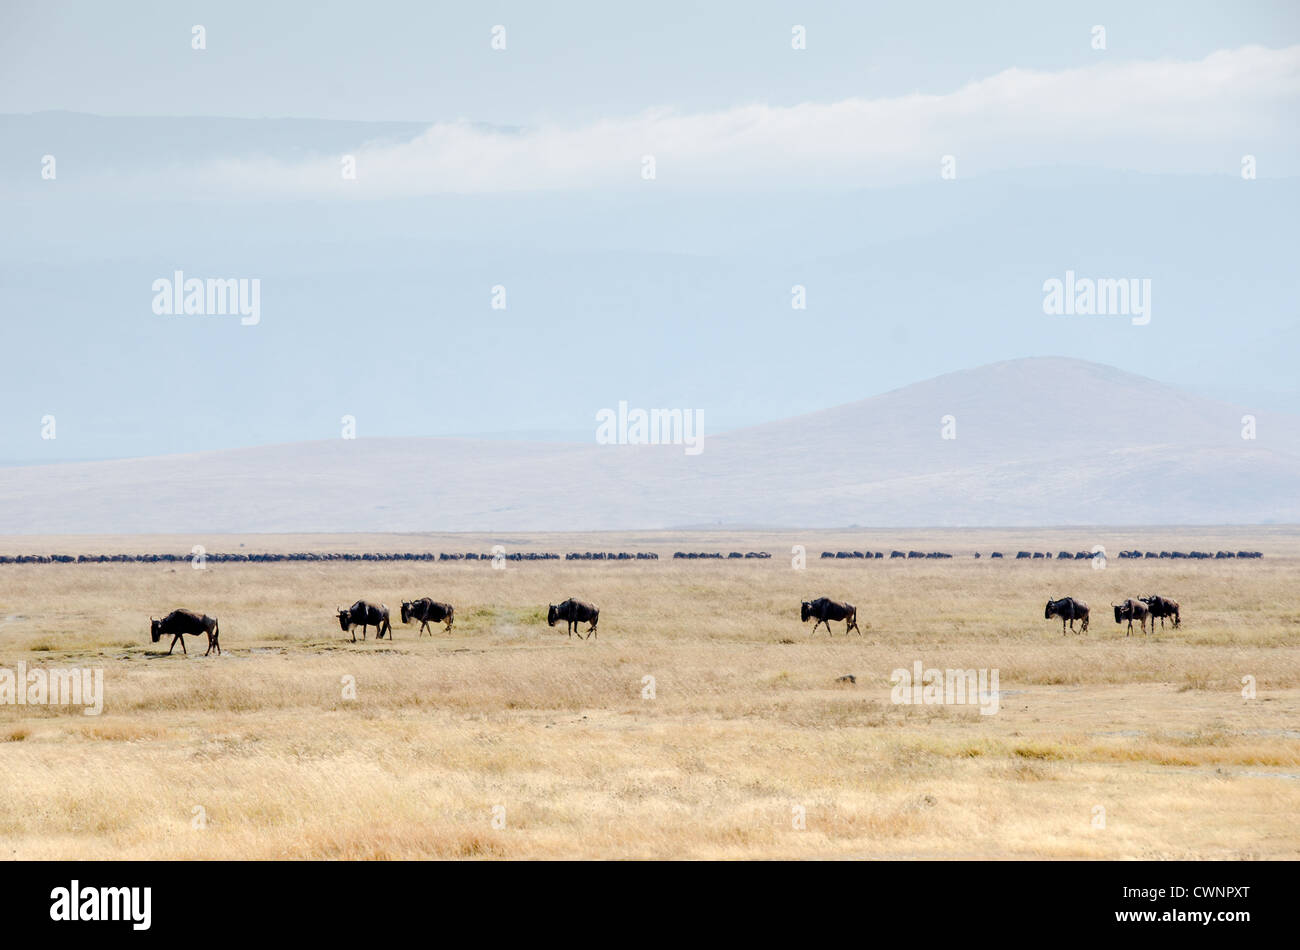 Área de conservación Ngorongoro, Tanzania - un puñado de ñus andando en primer plano con una manada mucho más grande en el centro del bastidor en el fondo en el Cráter del Ngorongoro, parte del circuito del norte de Tanzania de parques nacionales y reservas naturales. Foto de stock